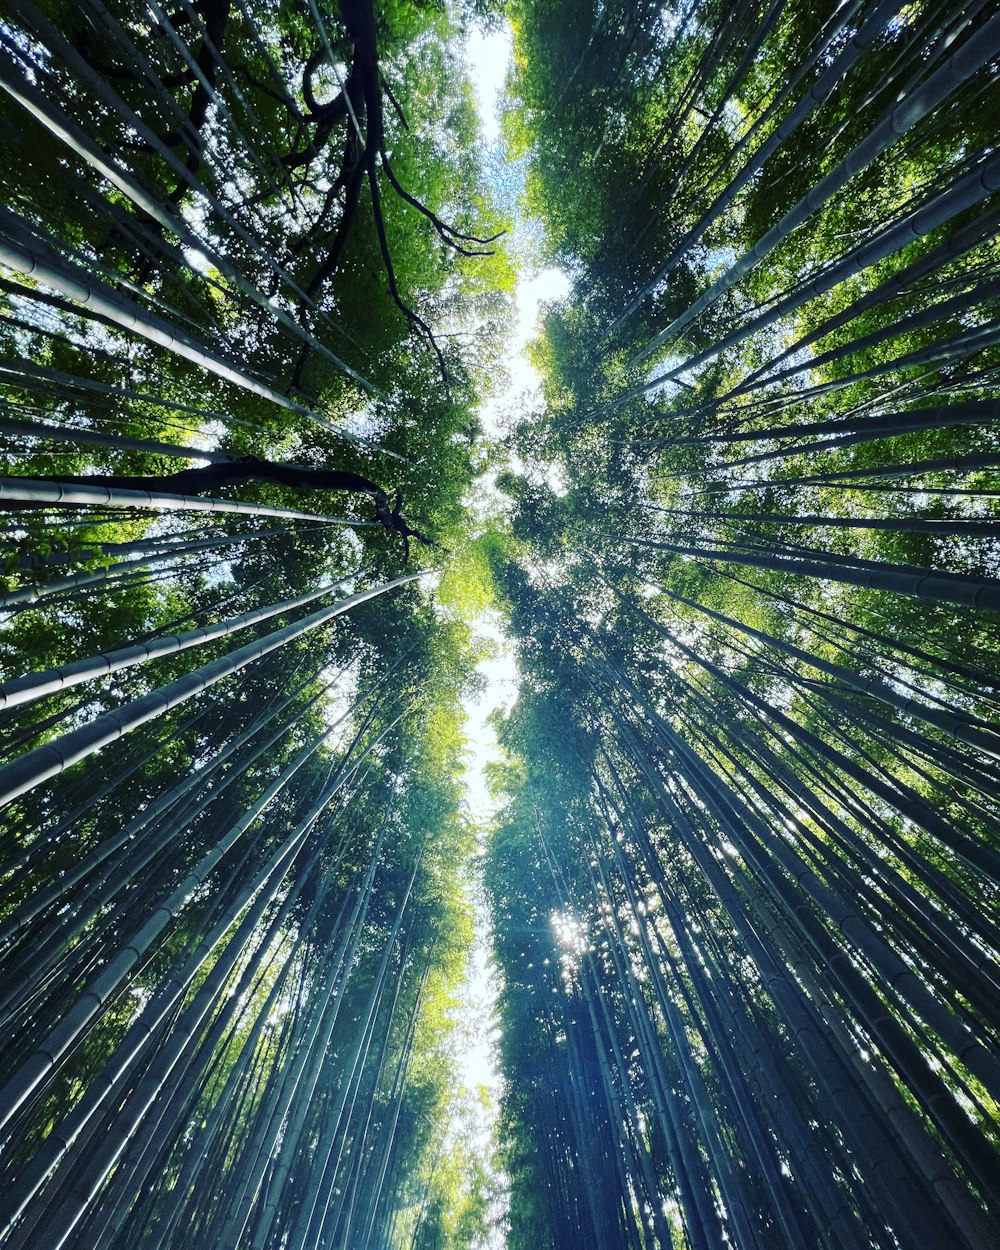 Una vista mirando hacia un bosque lleno de árboles altos